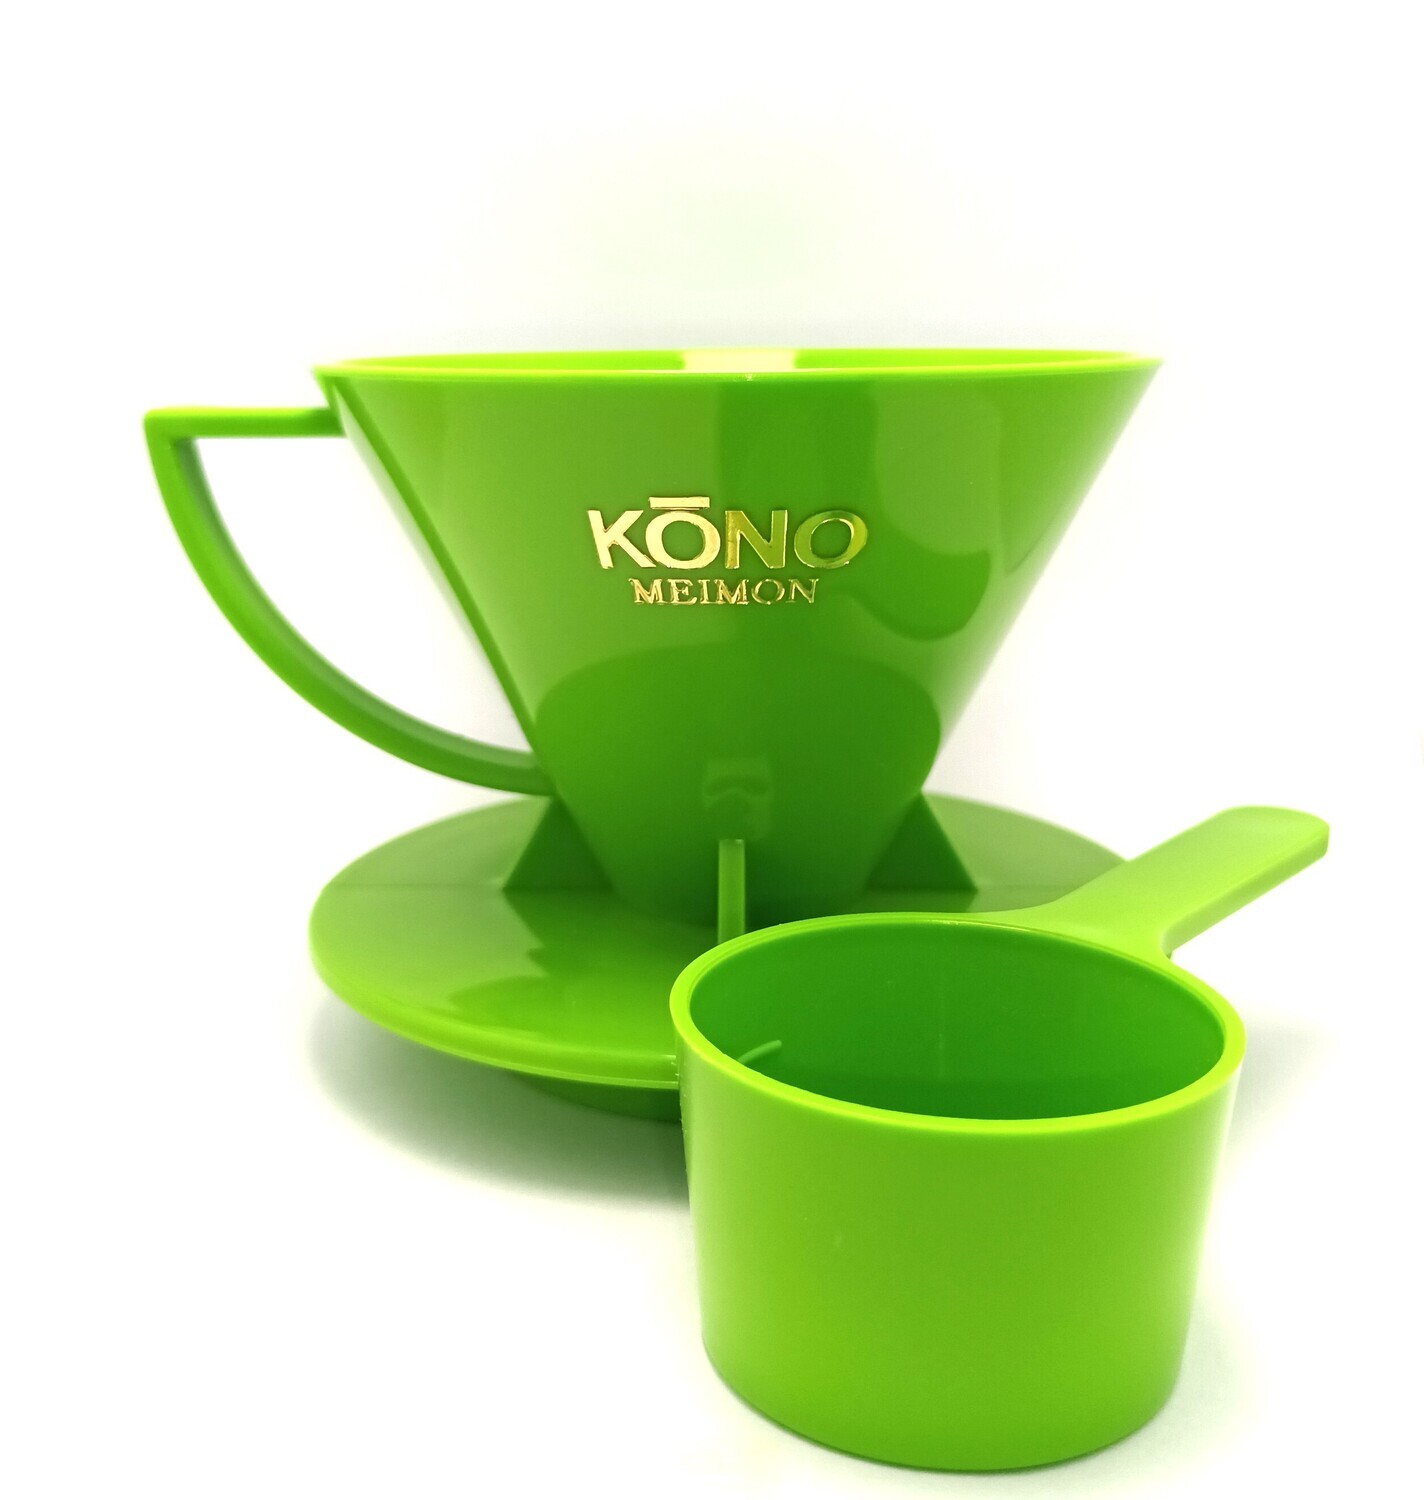 KONO Coffee Dripper Meimon2 MD-21 (中骨 青草綠色)